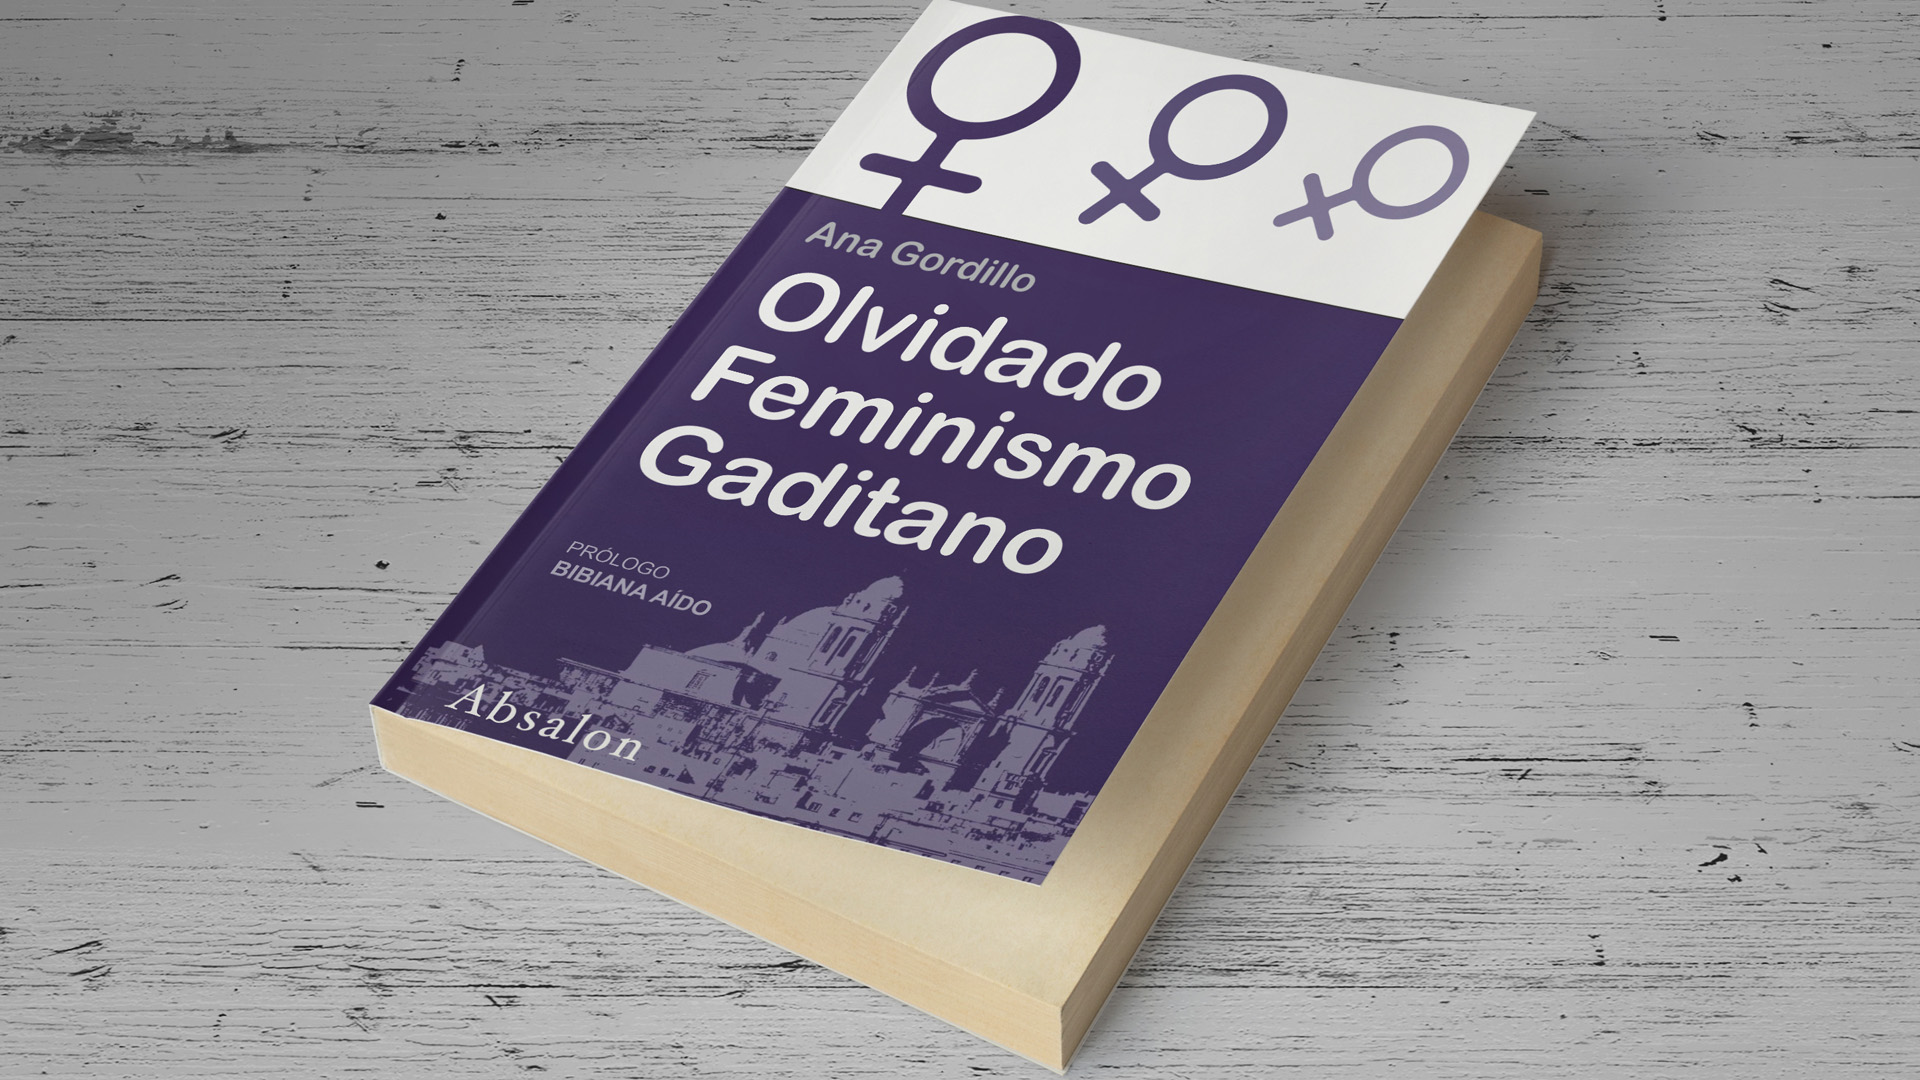 OLVIDADO FEMINISMO STUDIO AREA 51